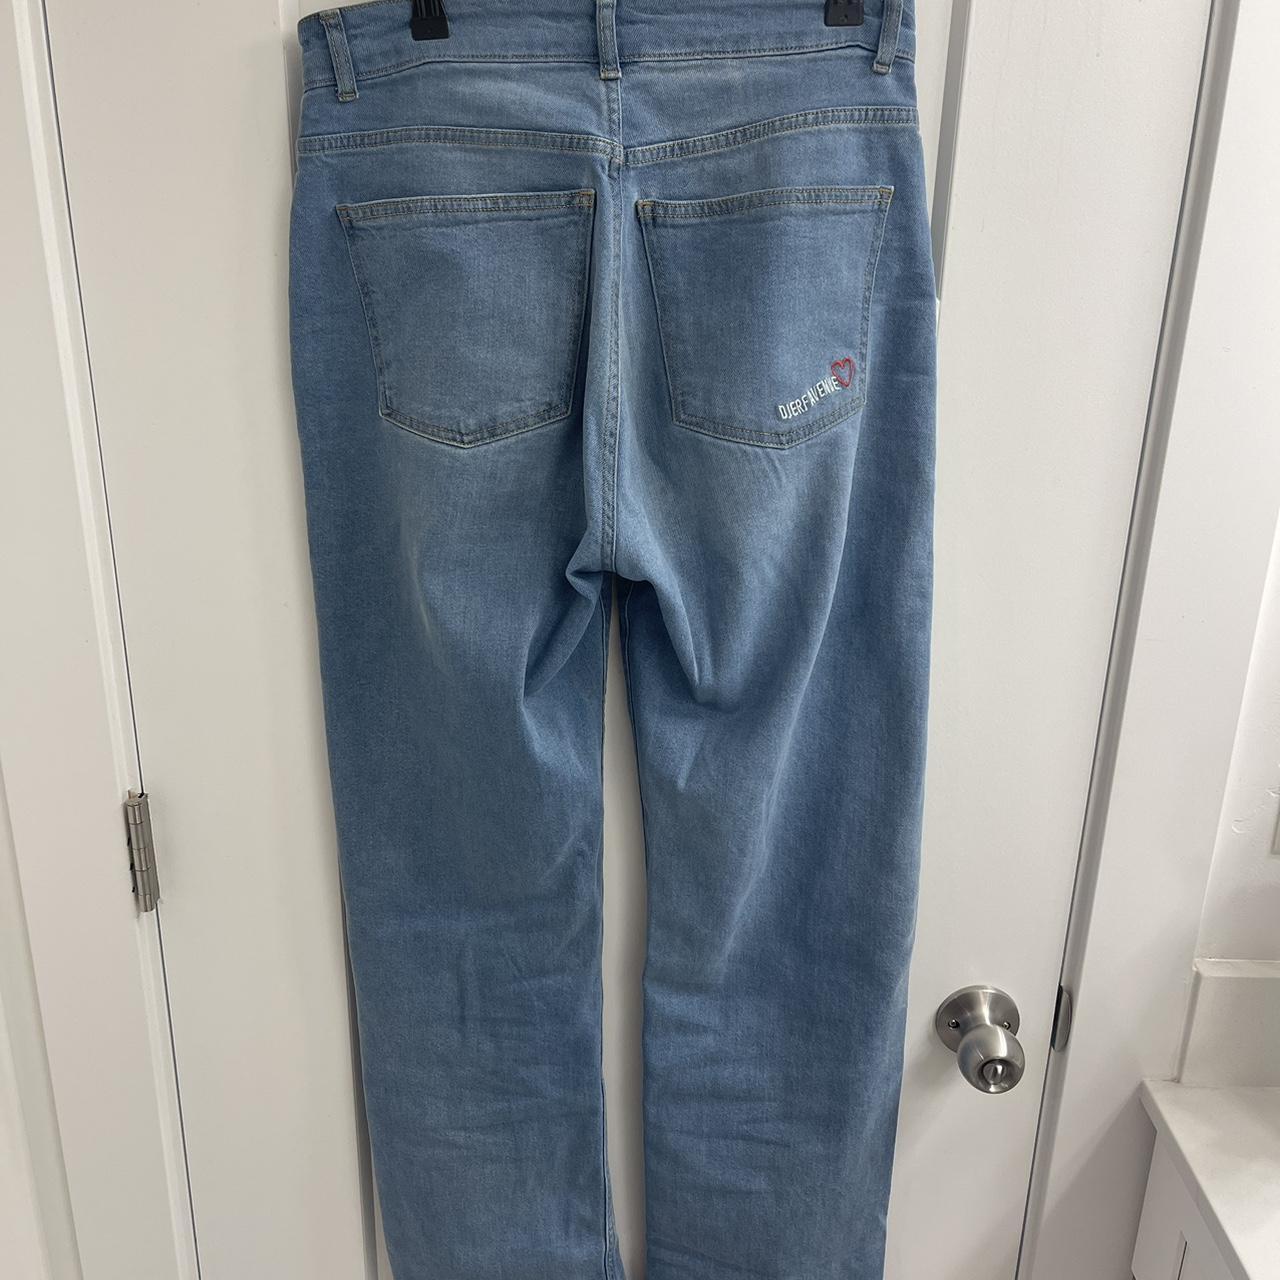 Djerf Avenue Women's Jeans (6)